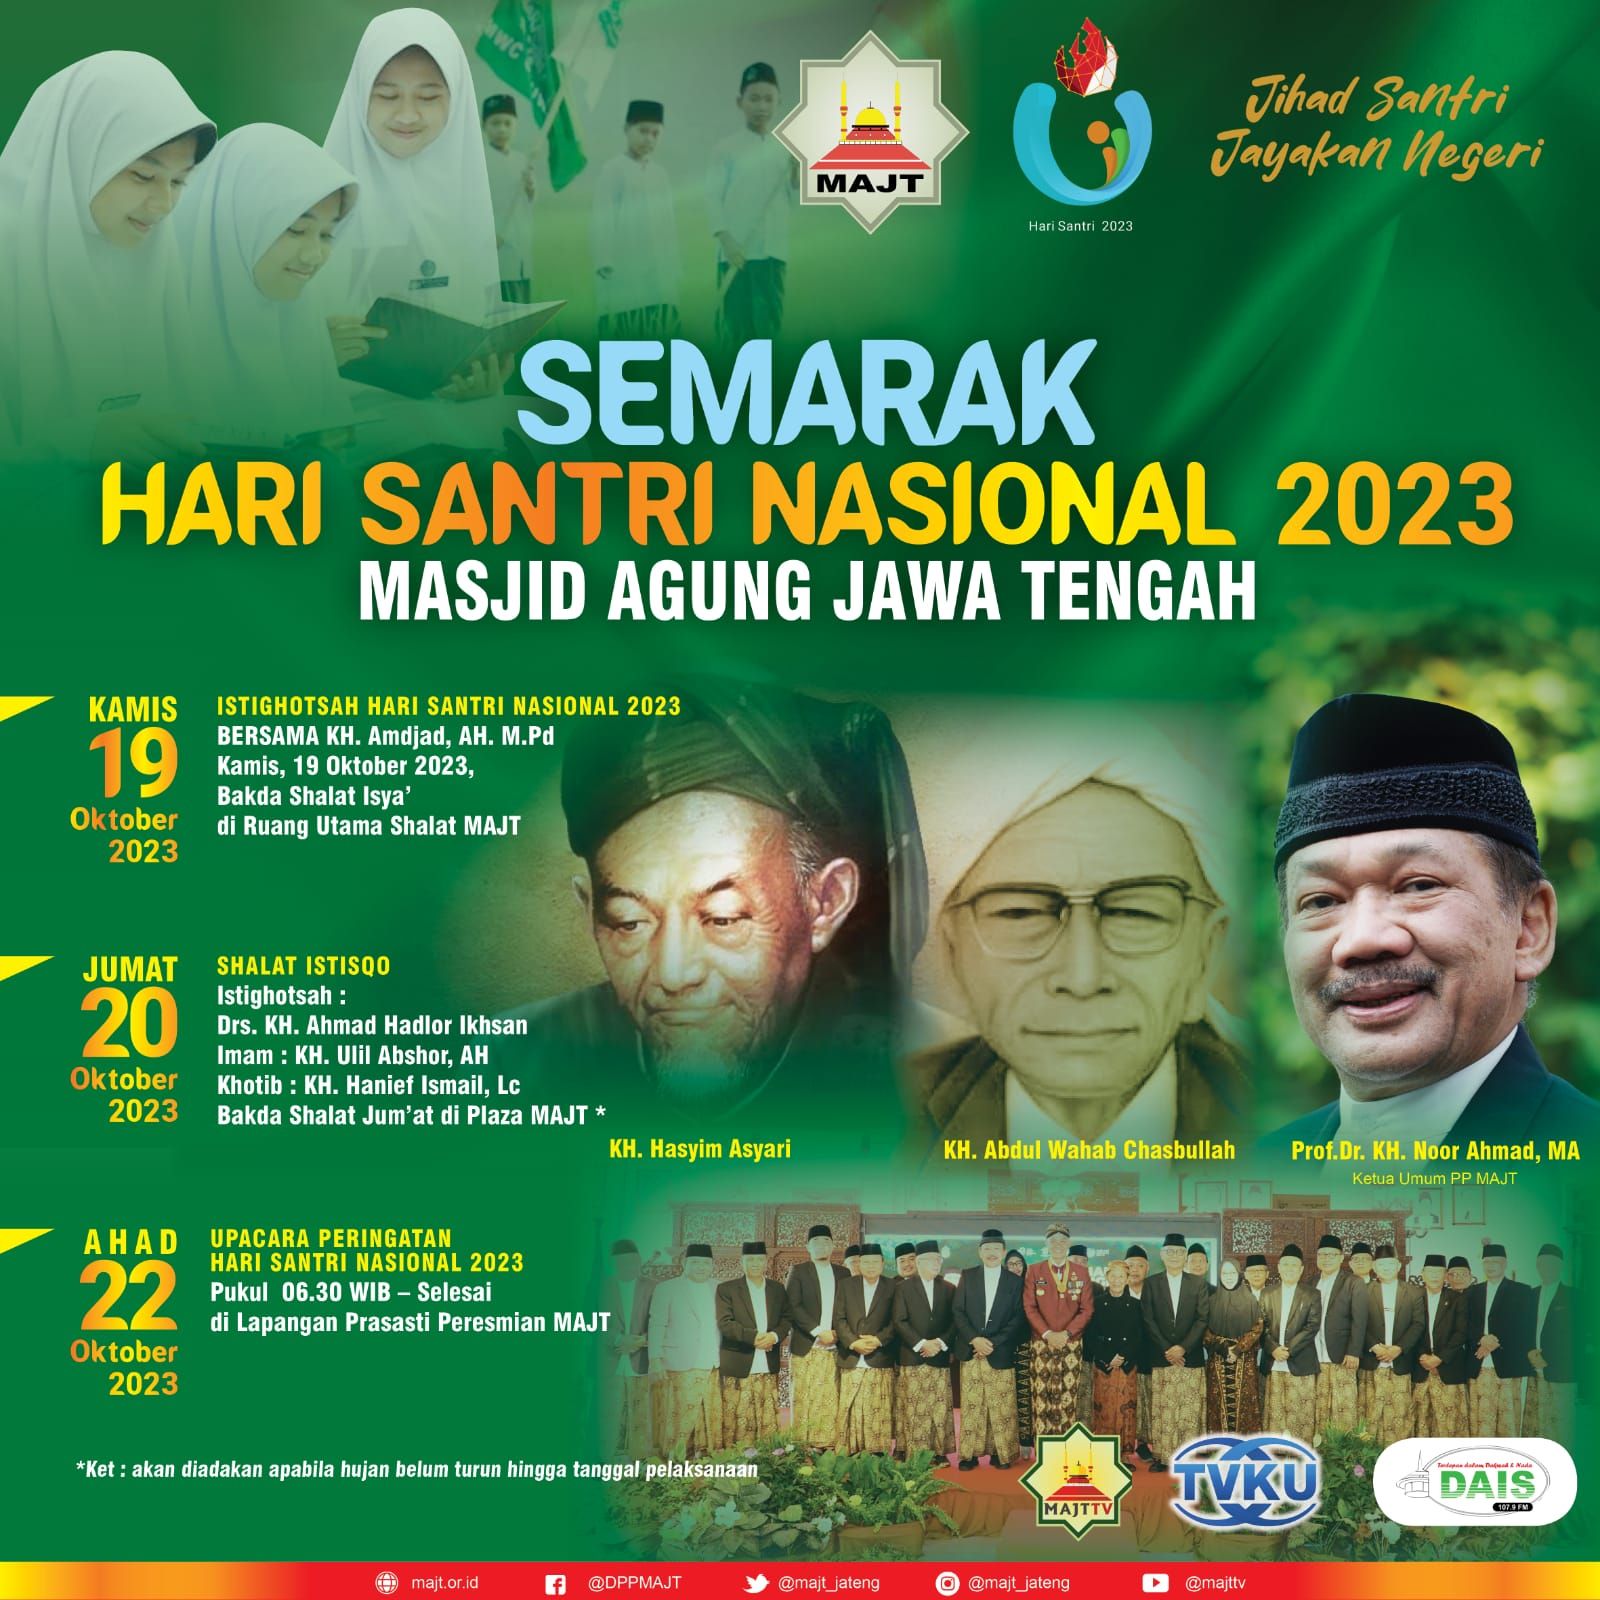 Semarak Hari Santri Nasional Masjid Agung Jawa Tengah